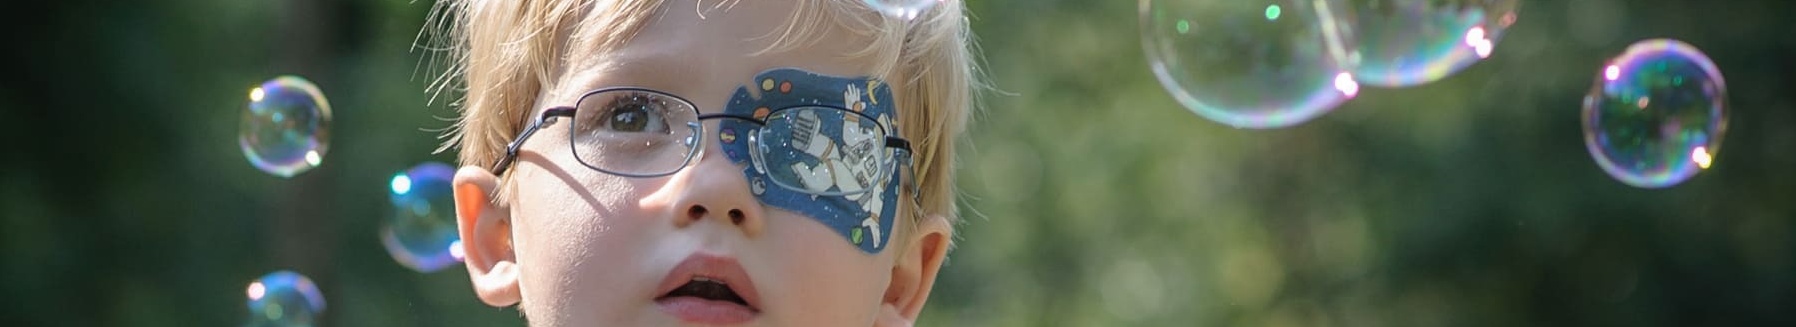 Junge mit ORTOPAD® Augenpflaster "Astronaut"